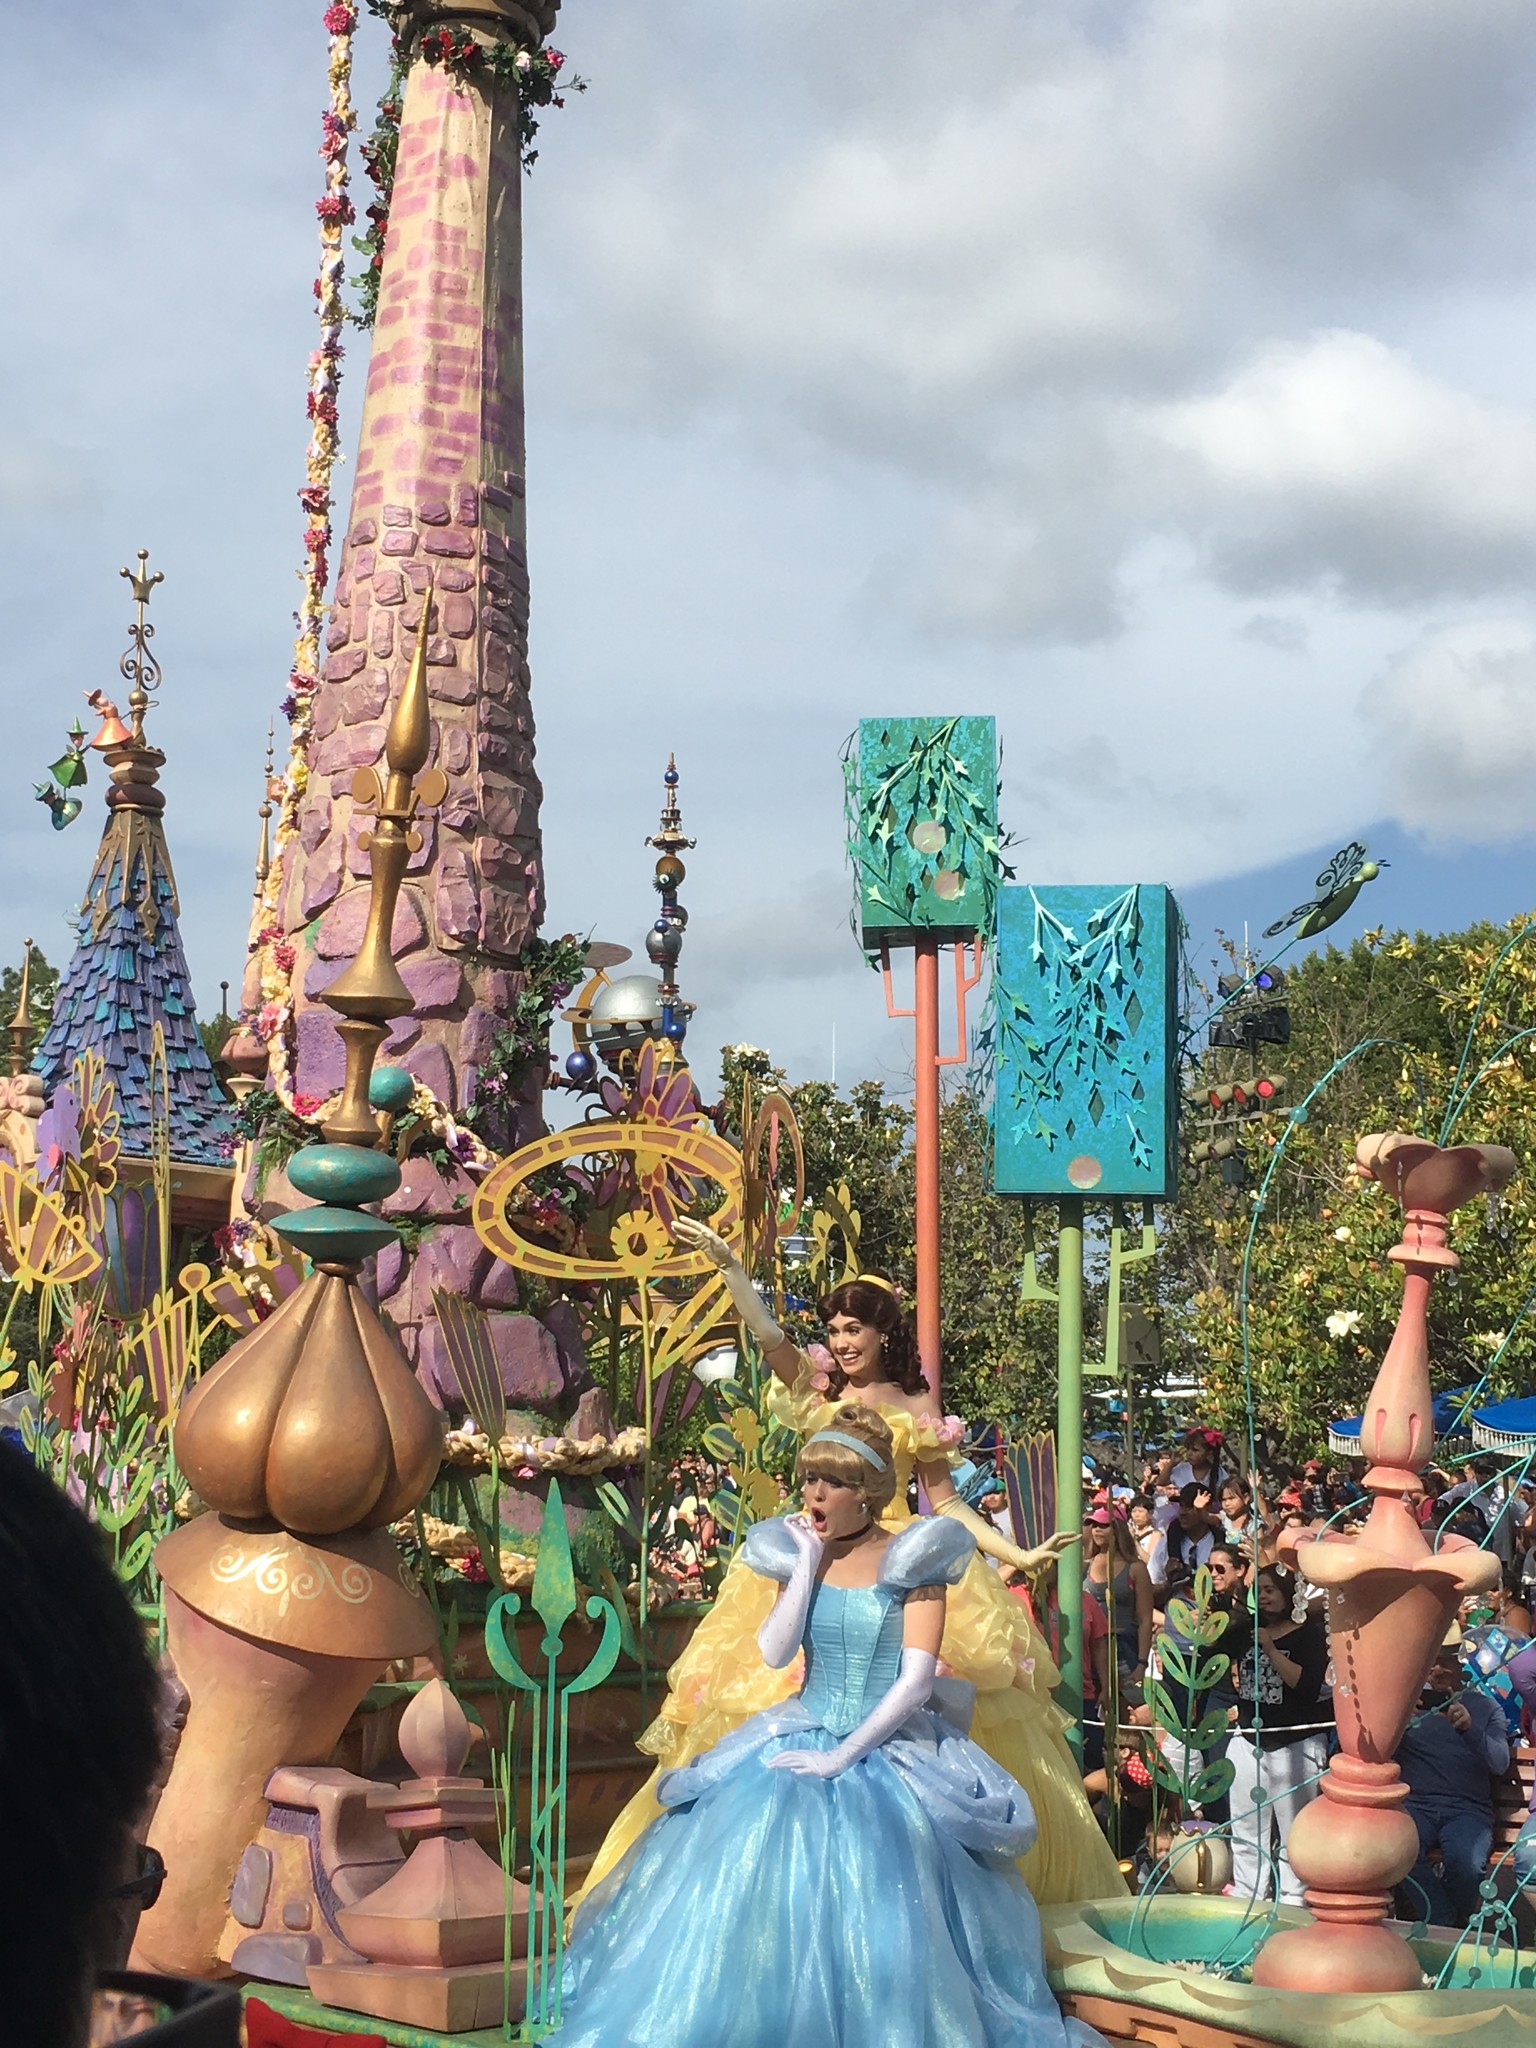 Disney princesses in parade at Disneyland